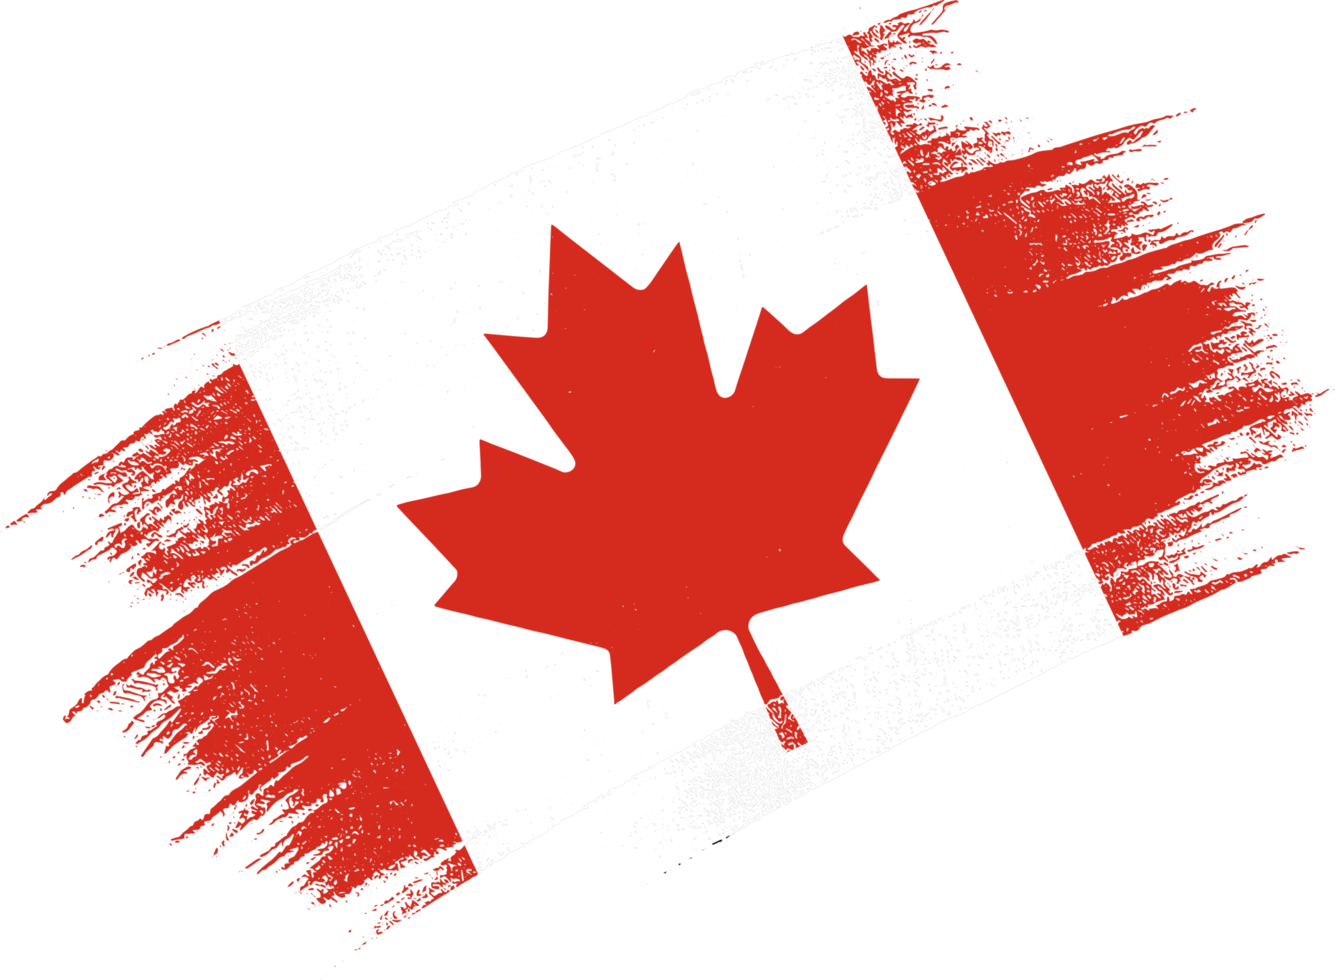 kanada flagga med borsta måla texturerad isolerat på png eller transparent bakgrund